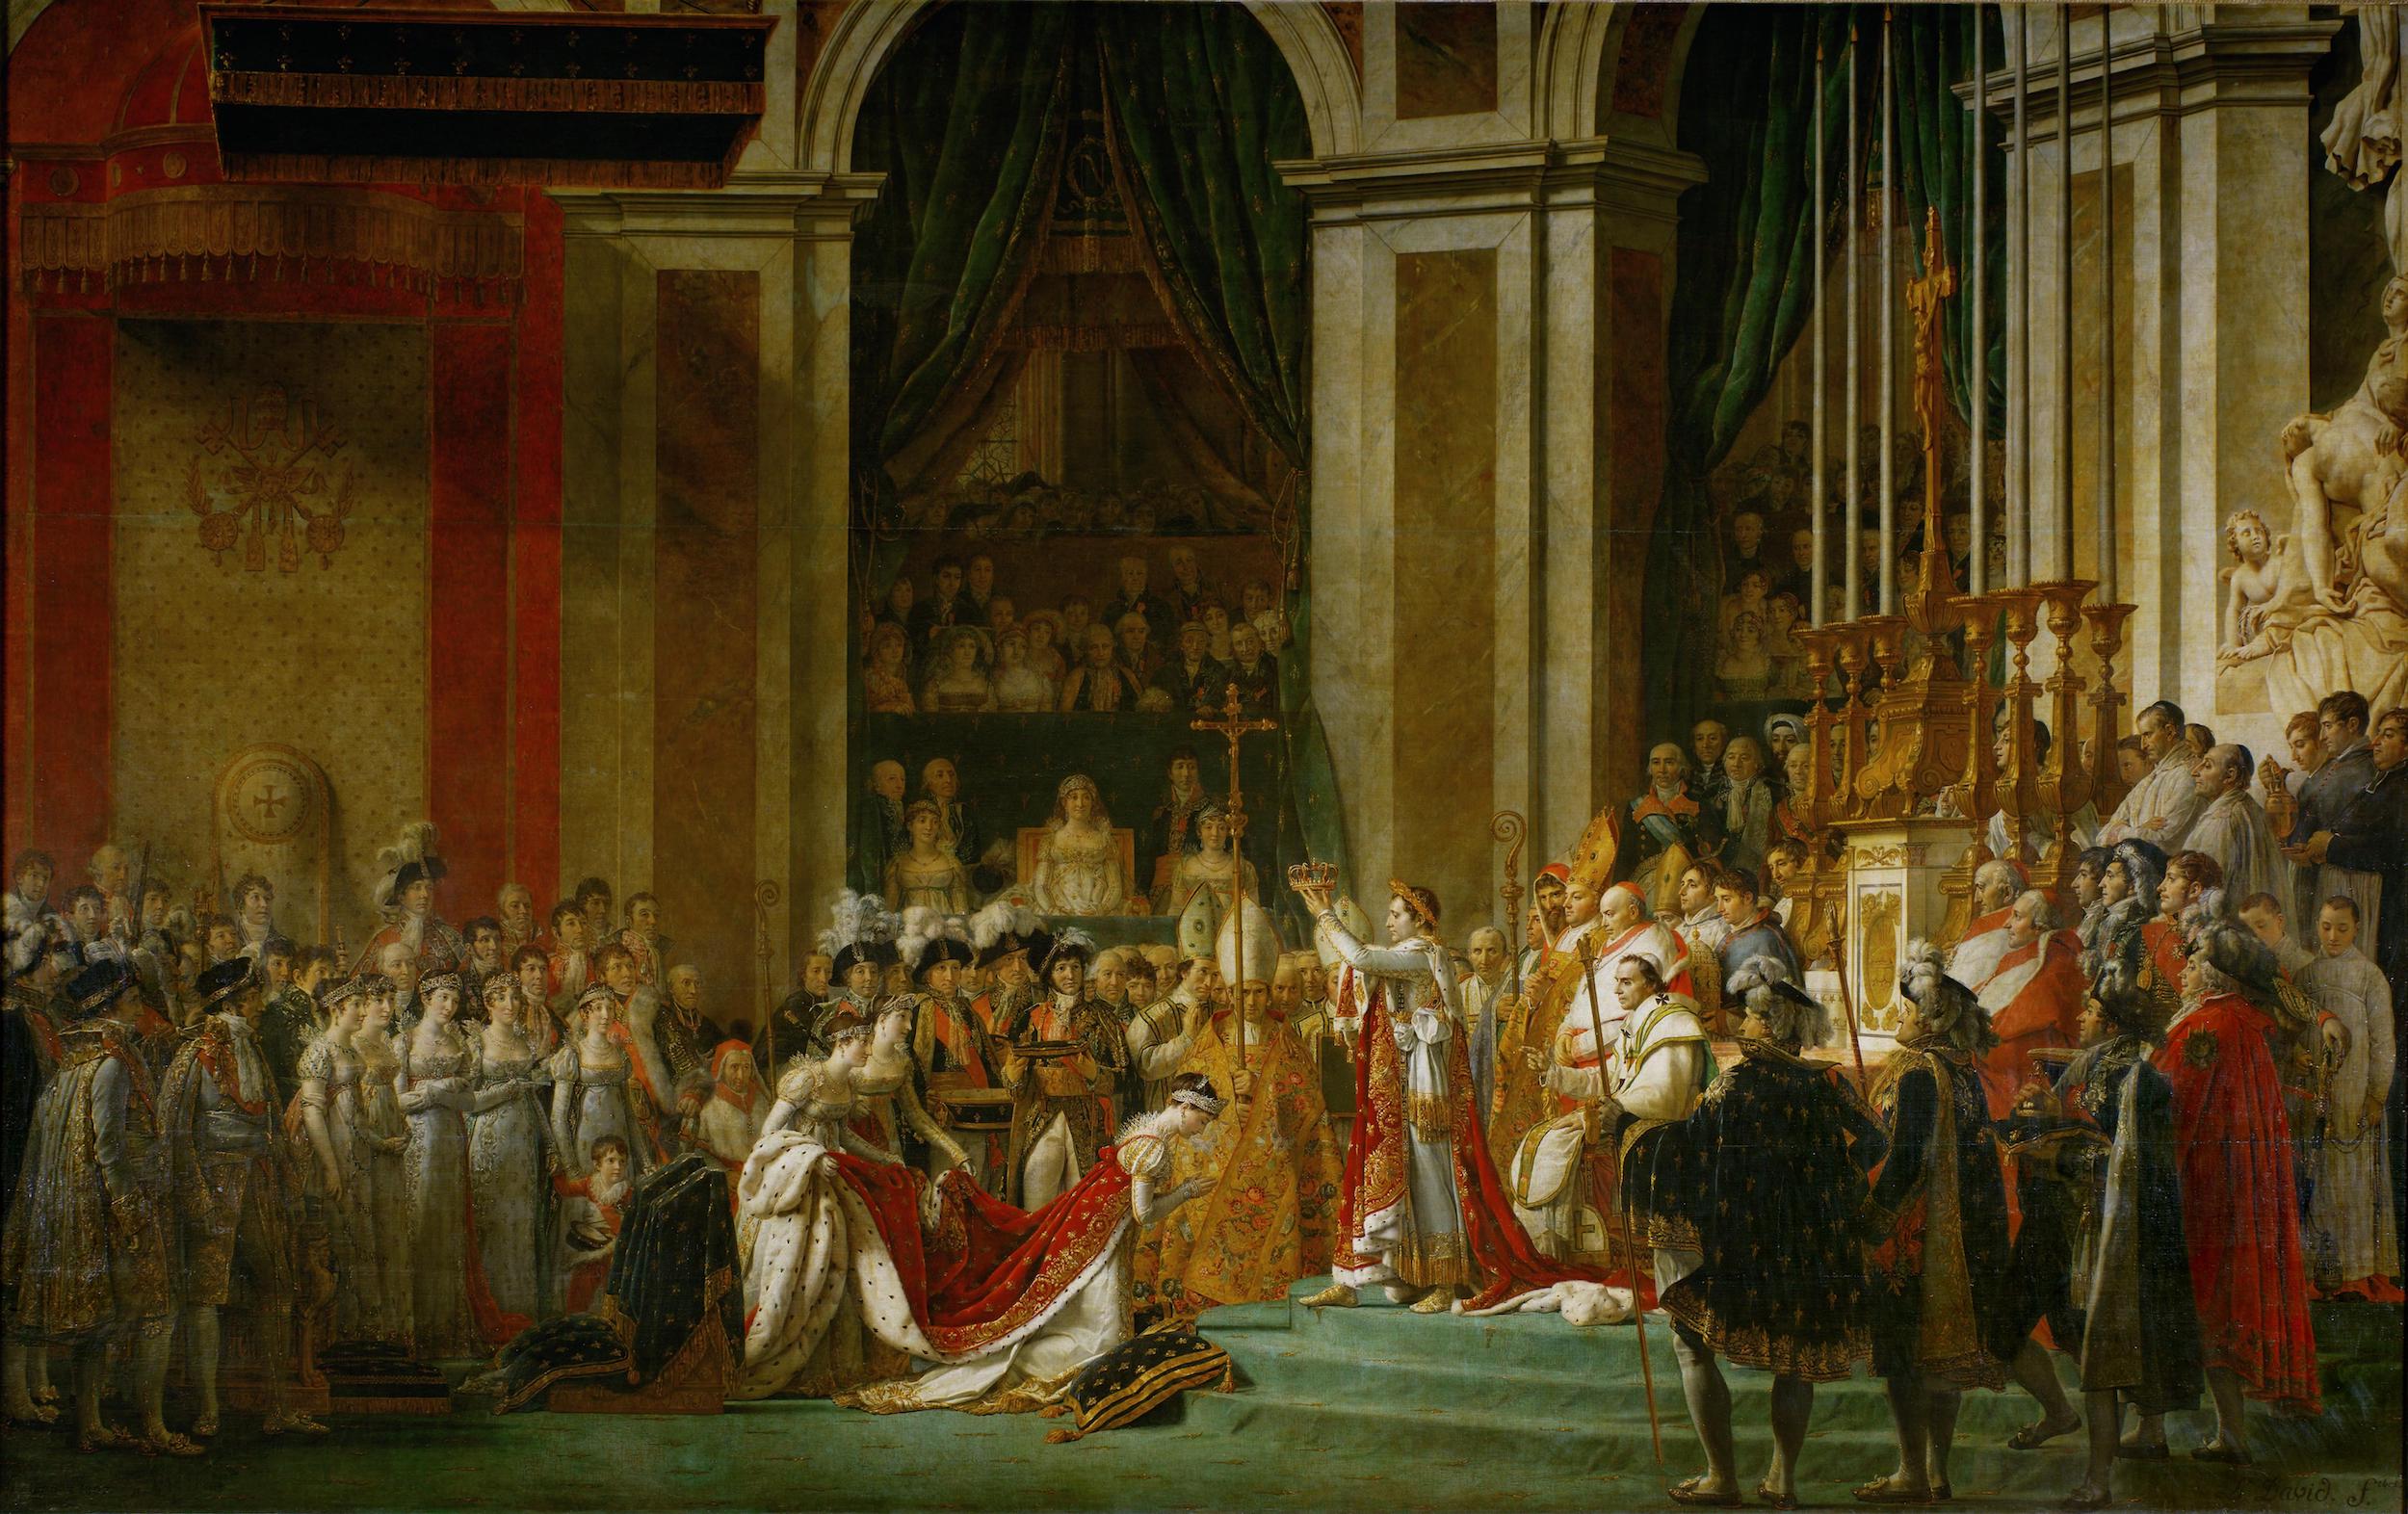 Η στέψη του αυτοκράτορα Ναπολέοντα Α' και της αυτοκράτειρας Ιωσηφίνας by Ζακ-Λουί Νταβίντ - 1806-1807 - 6,21 x 9.79 μ. 